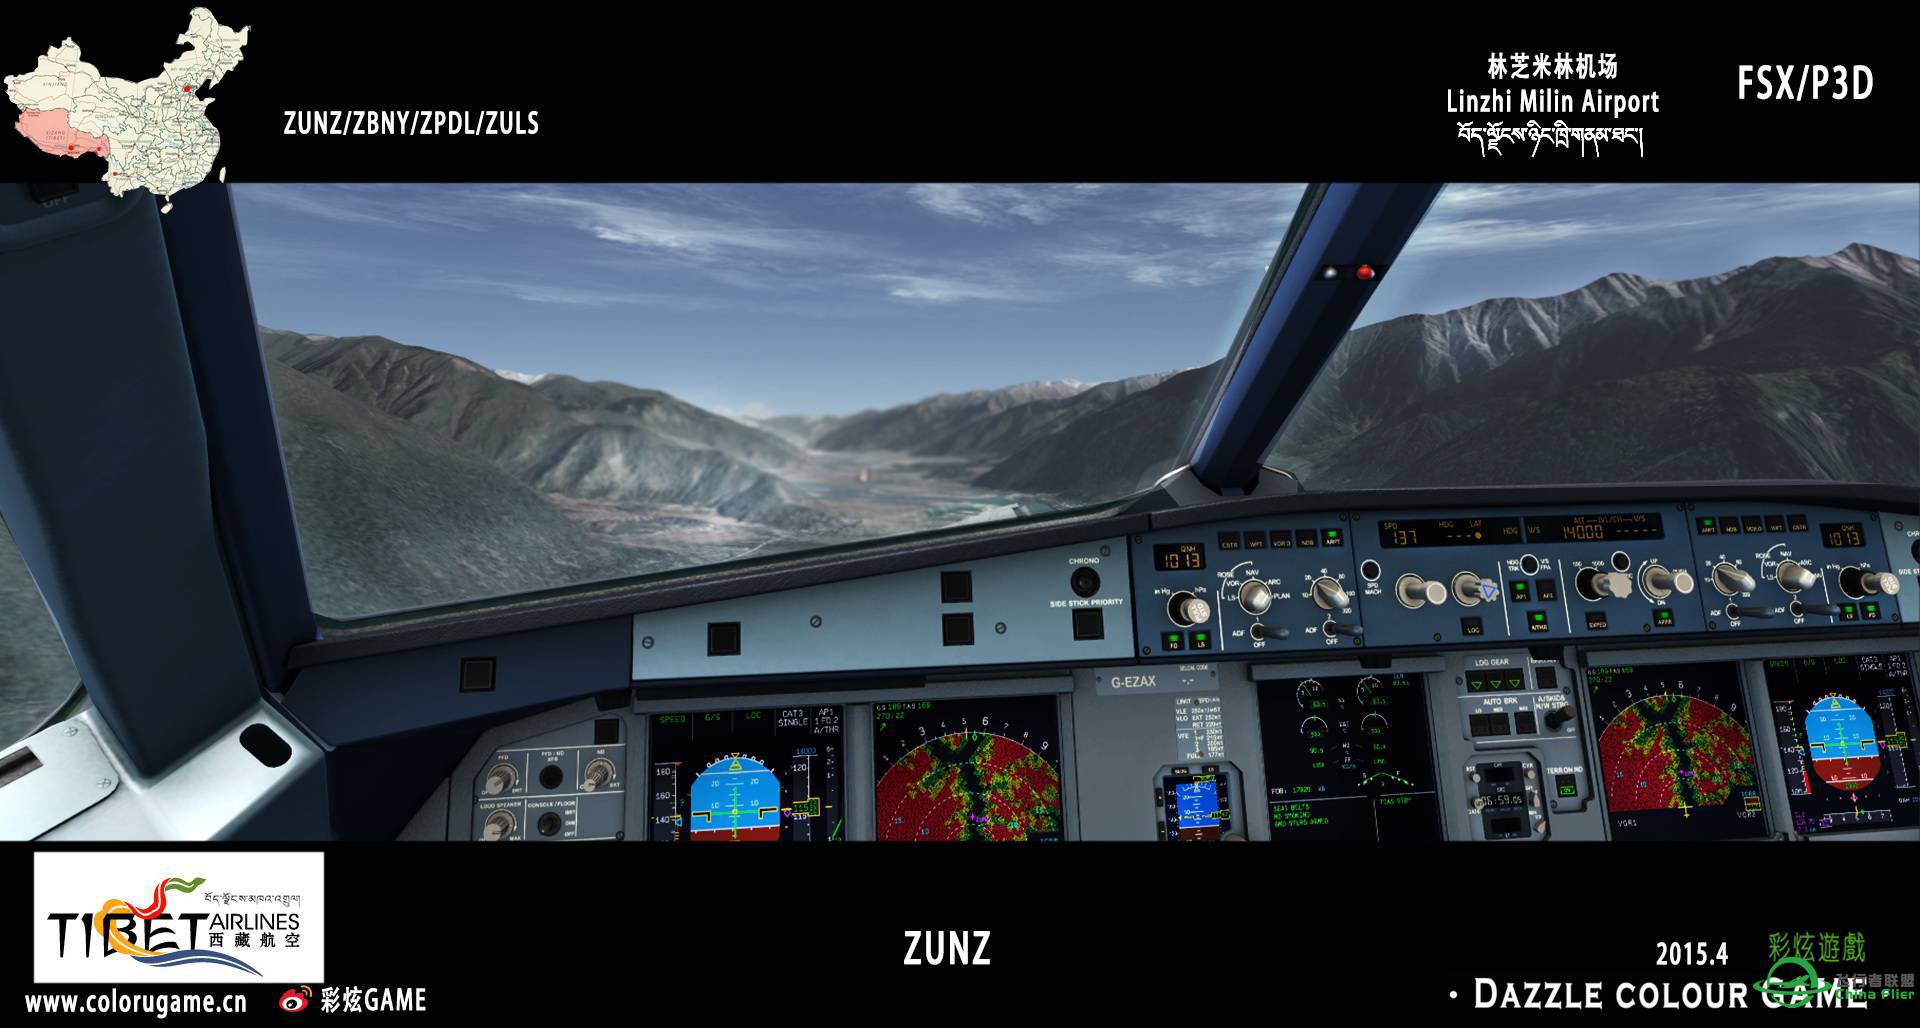 彩炫地景：林芝米林机场（ZUNZ）正式发布！-4590 